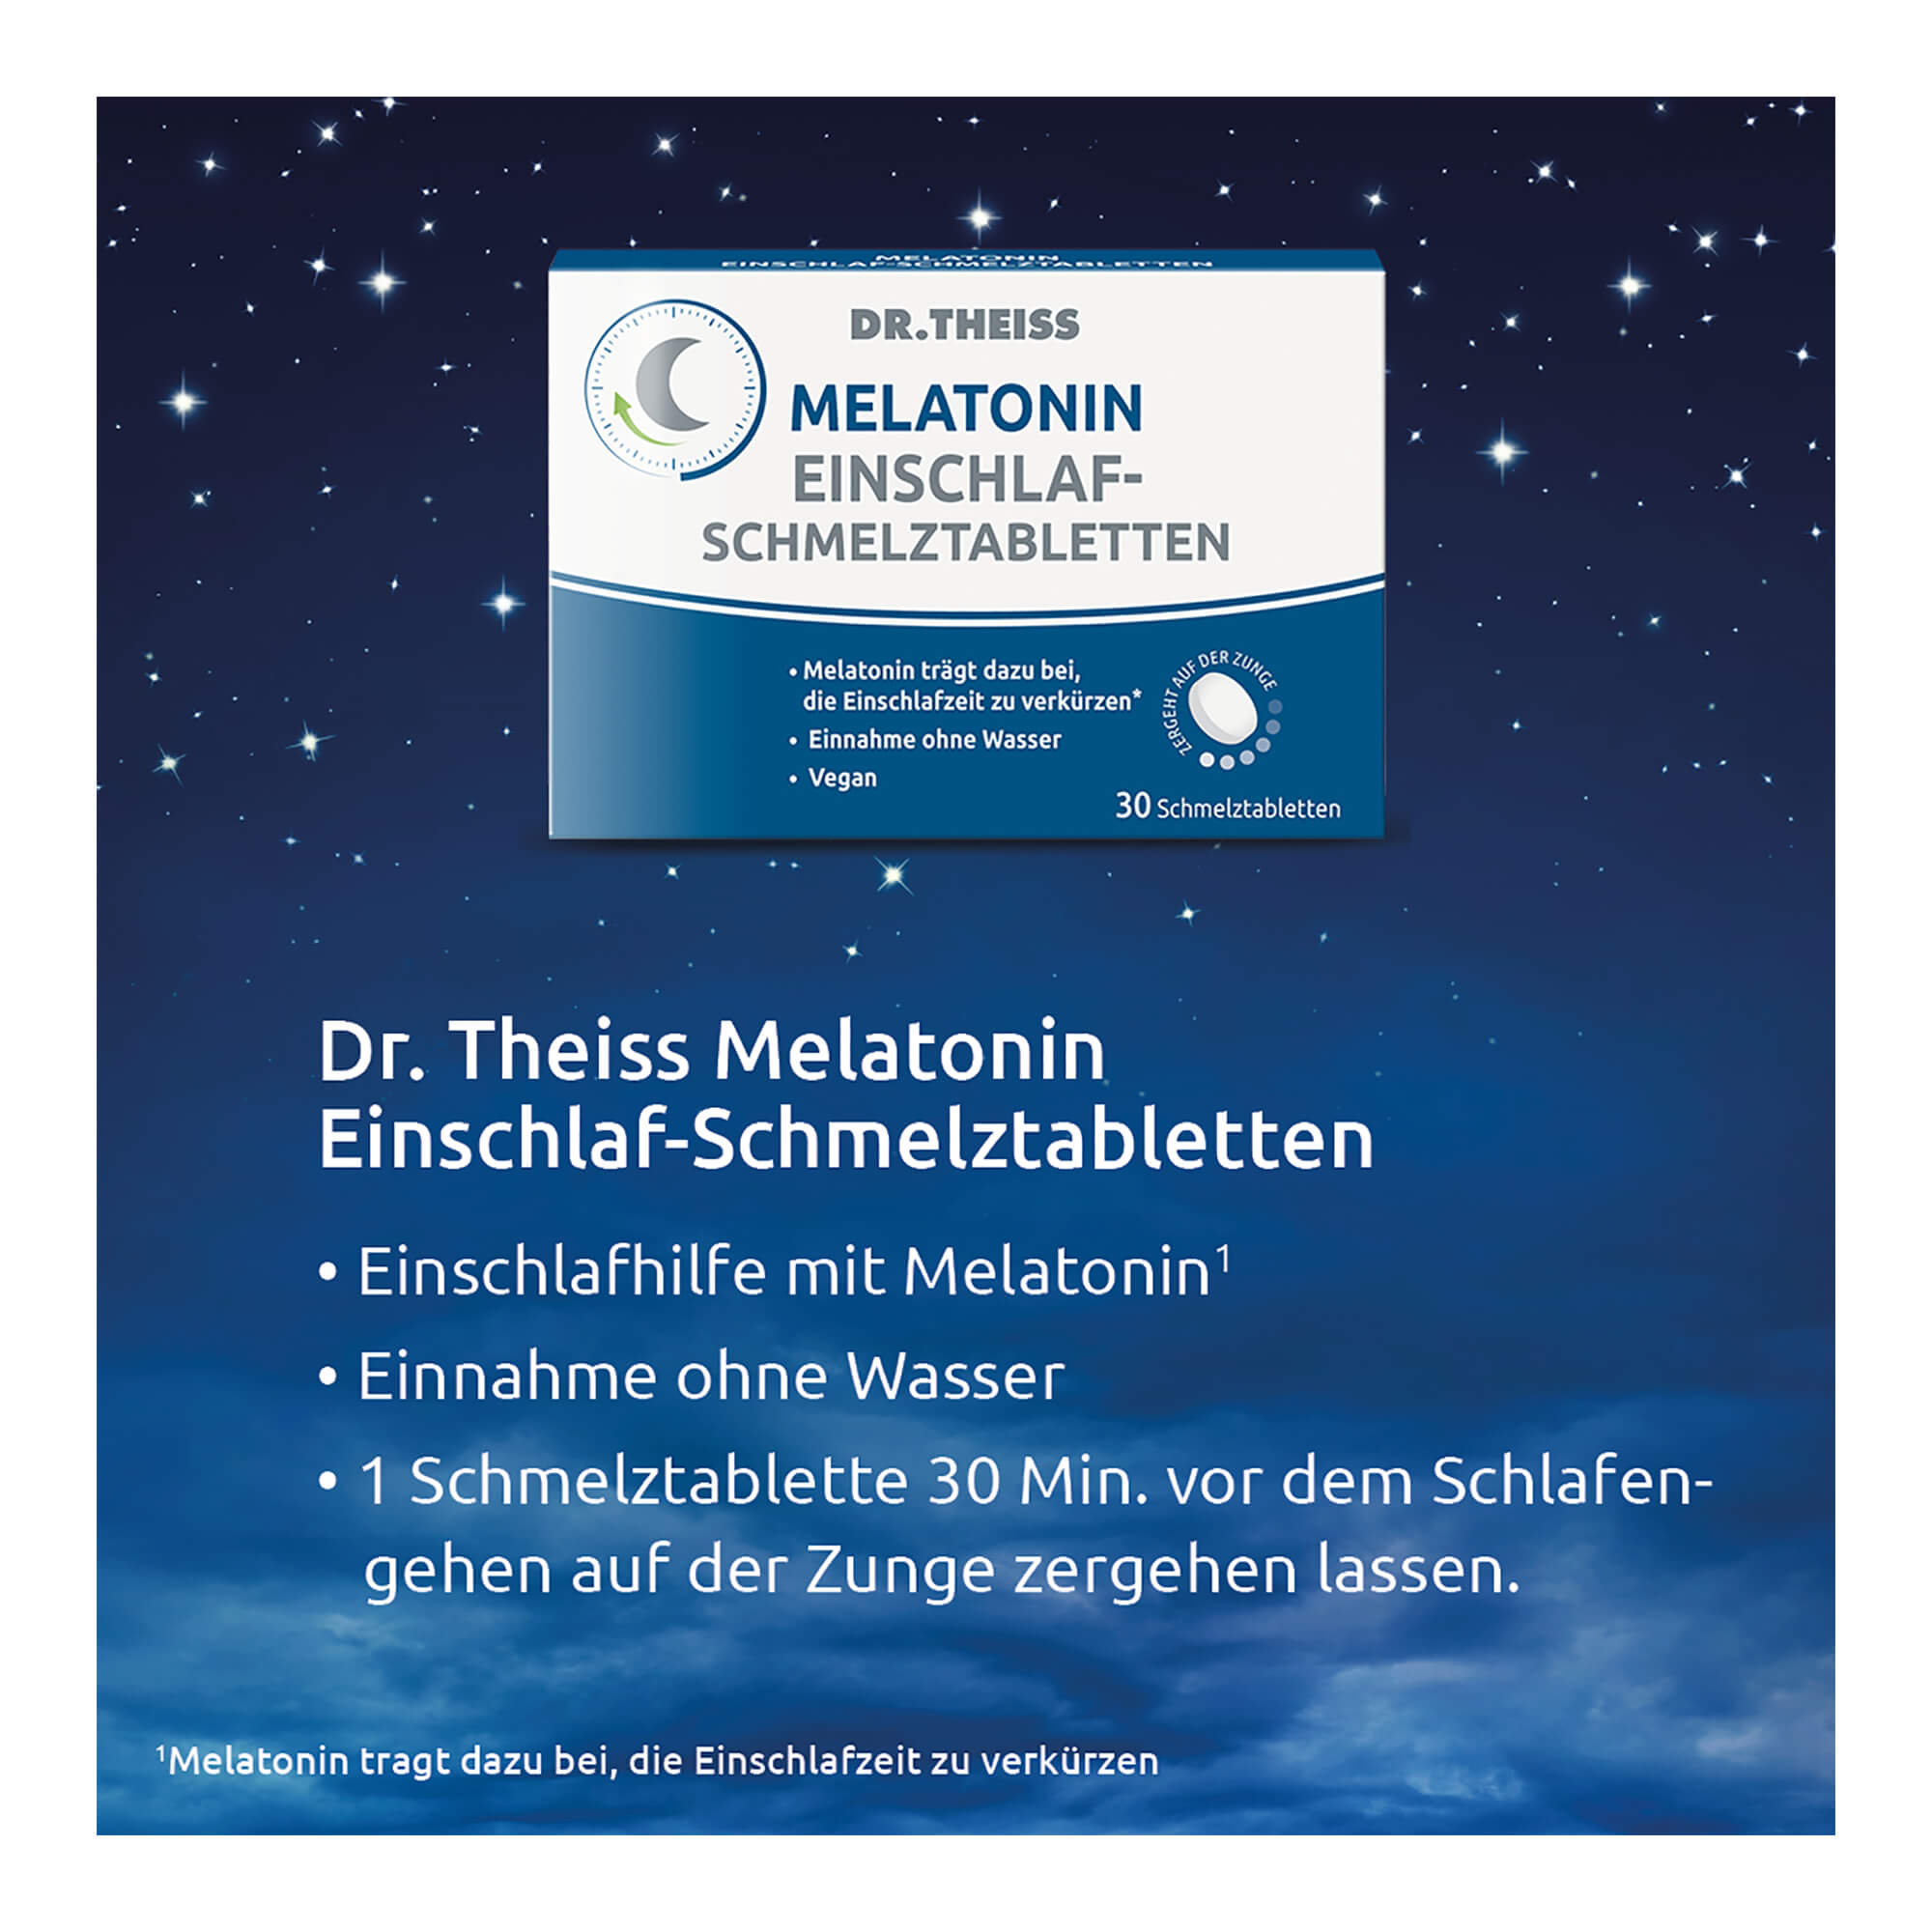 Grafik Dr. Theiss Melatonin Einschlaf-Schmelztabl. Anwendung